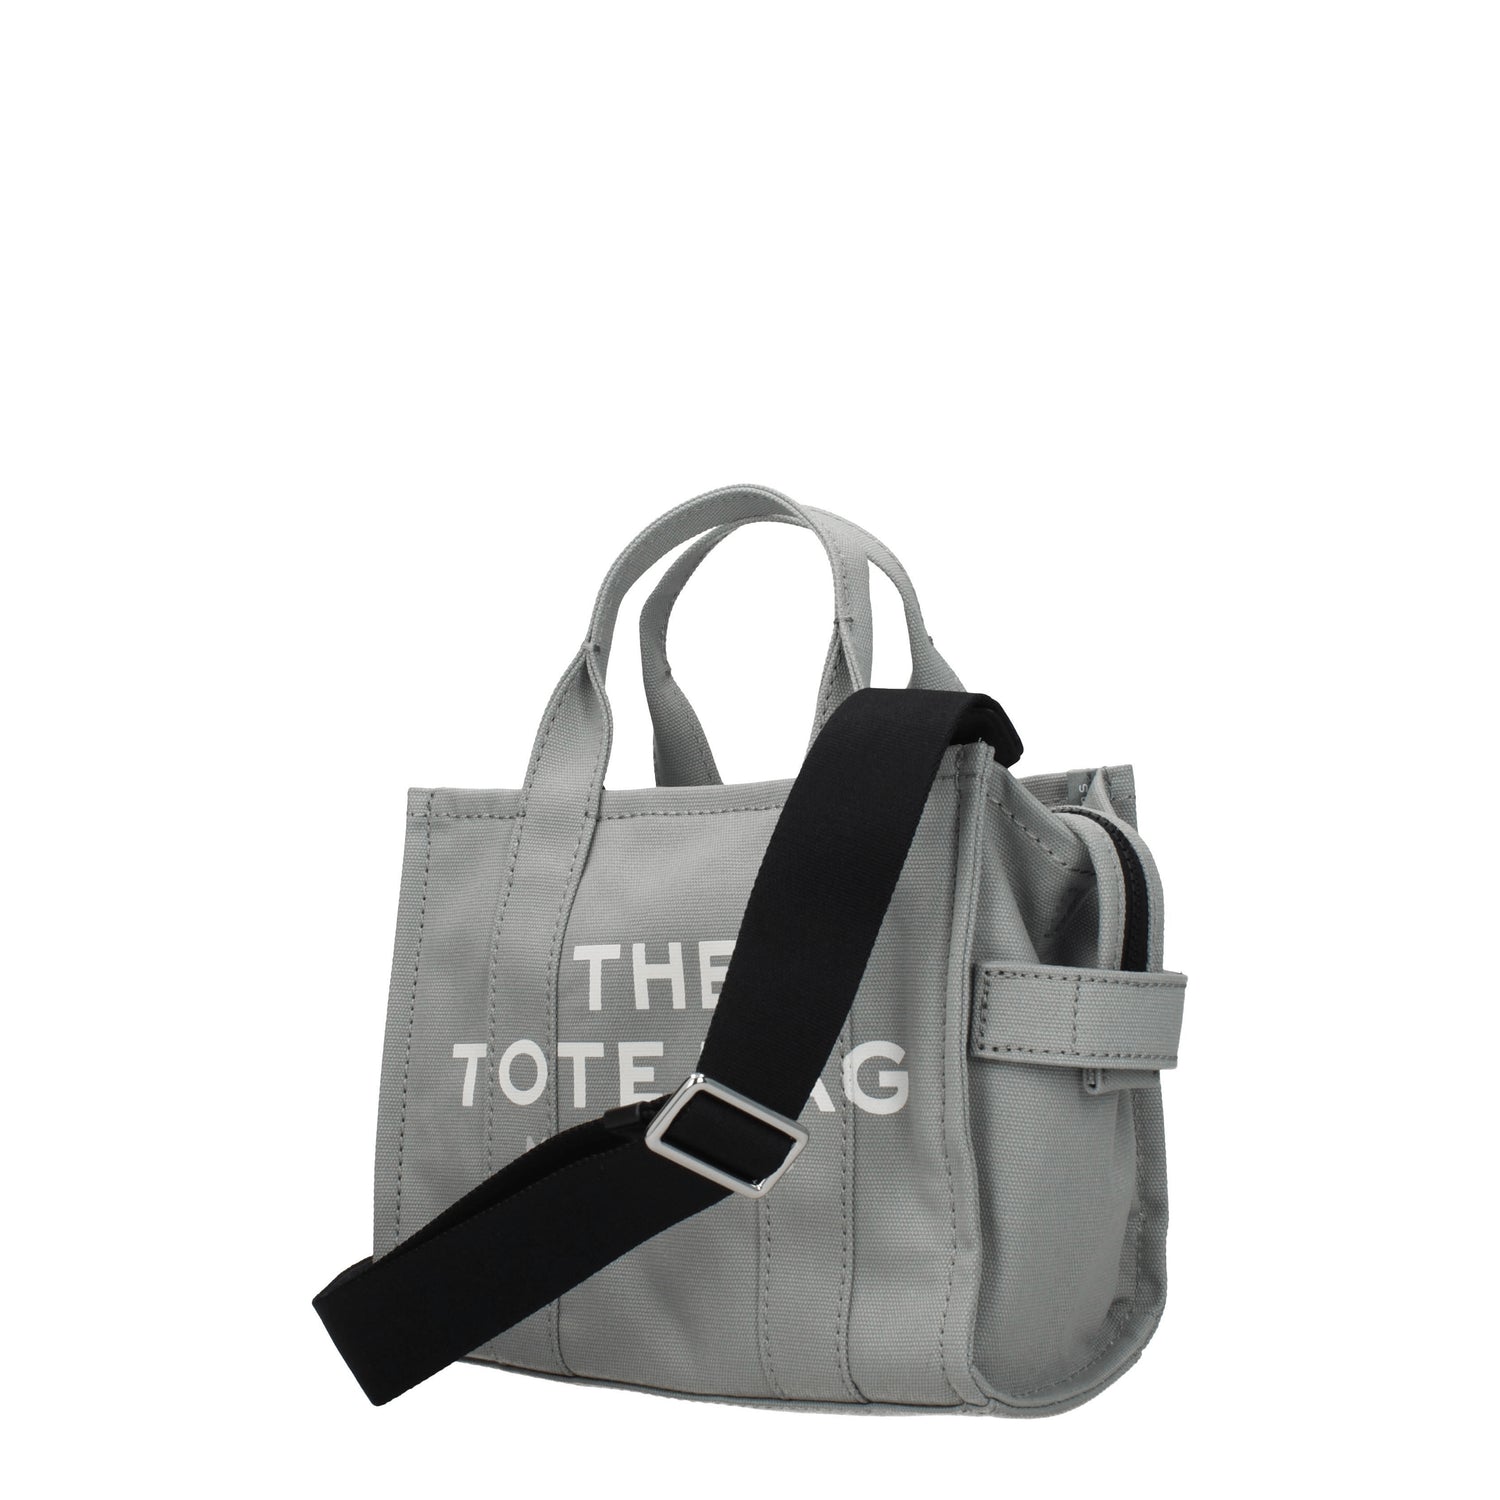 Marc Jacobs Borse a Mano the tote bag Donna Tessuto Grigio Grigio Lupo